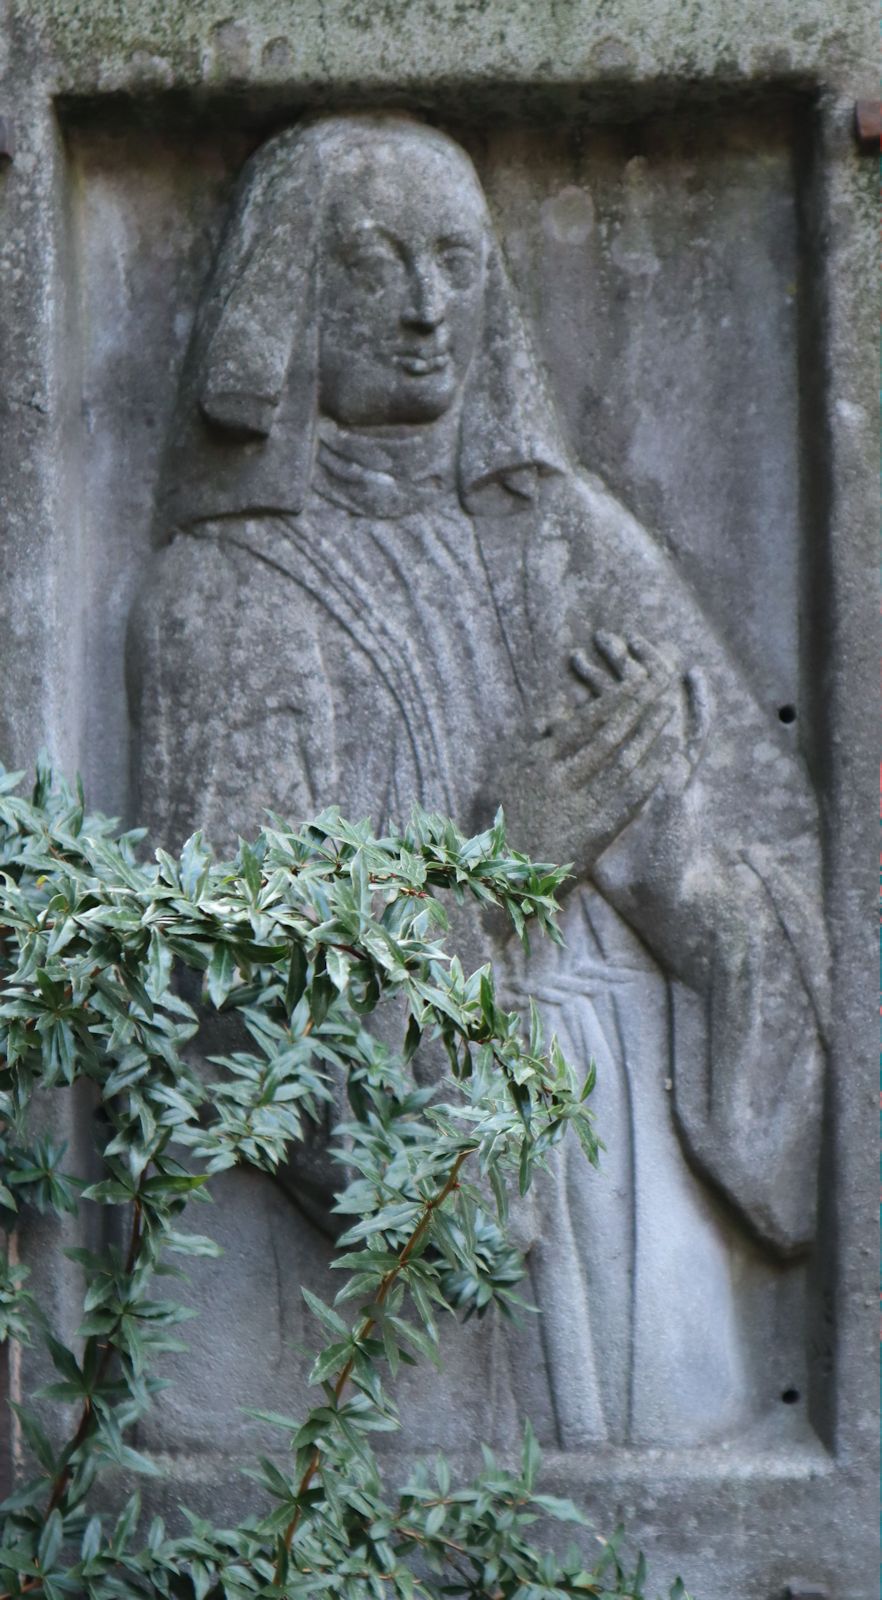 Relief am ehemaligen Grab an der St.-Klara-Kirche in Nürnberg